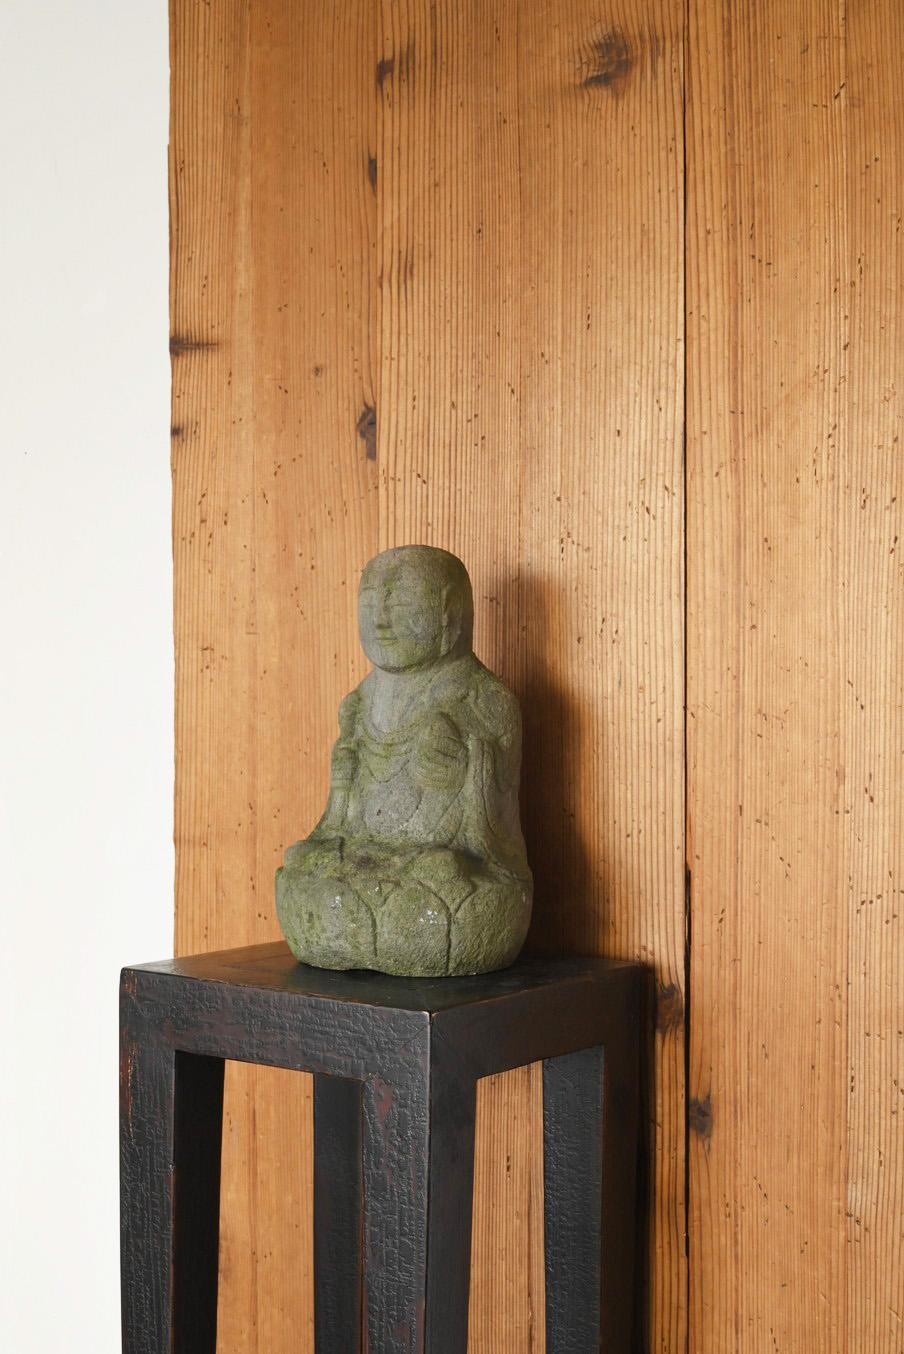 Hand-Carved Japanese antique stone Buddha/1750-1850/Edo/Jizo Bodhisattva Seated Statue